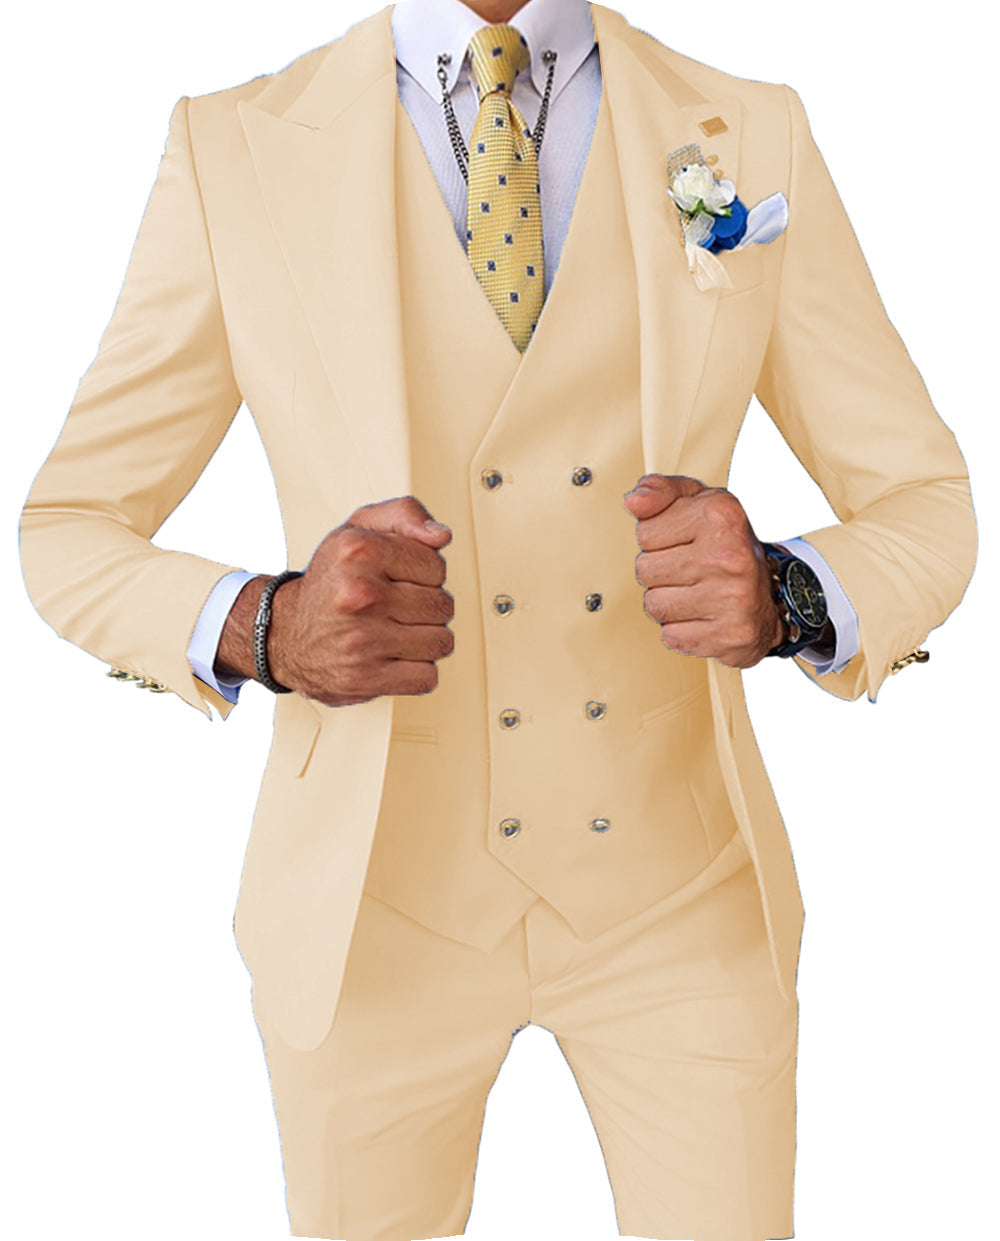 Formal Men's 3 Pieces Slim Fit Solid Color Peak Lapel Tuxedos For Wedding (Blazer+vest+Pants) mens event wear